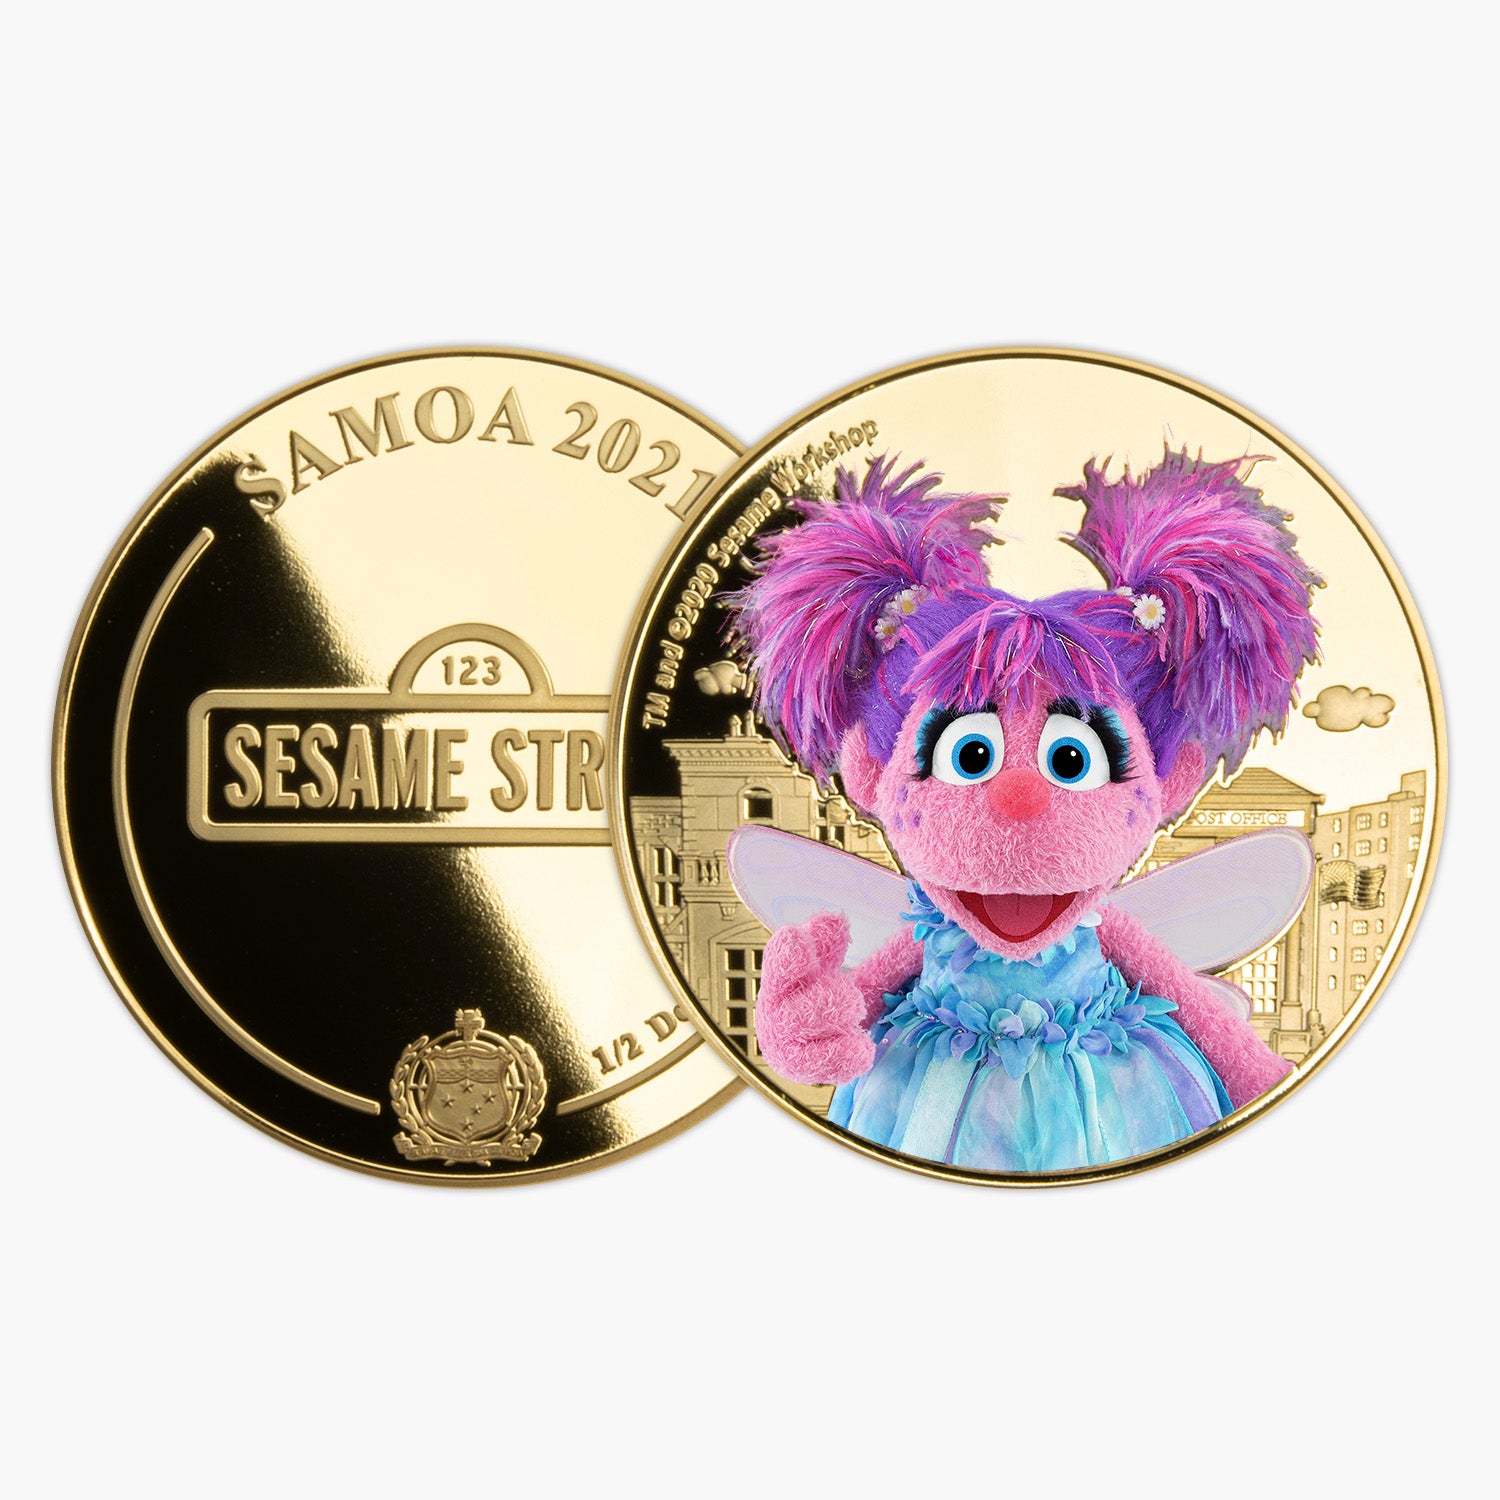 Sesame Street Abby Cadabby Gold Plated Coin